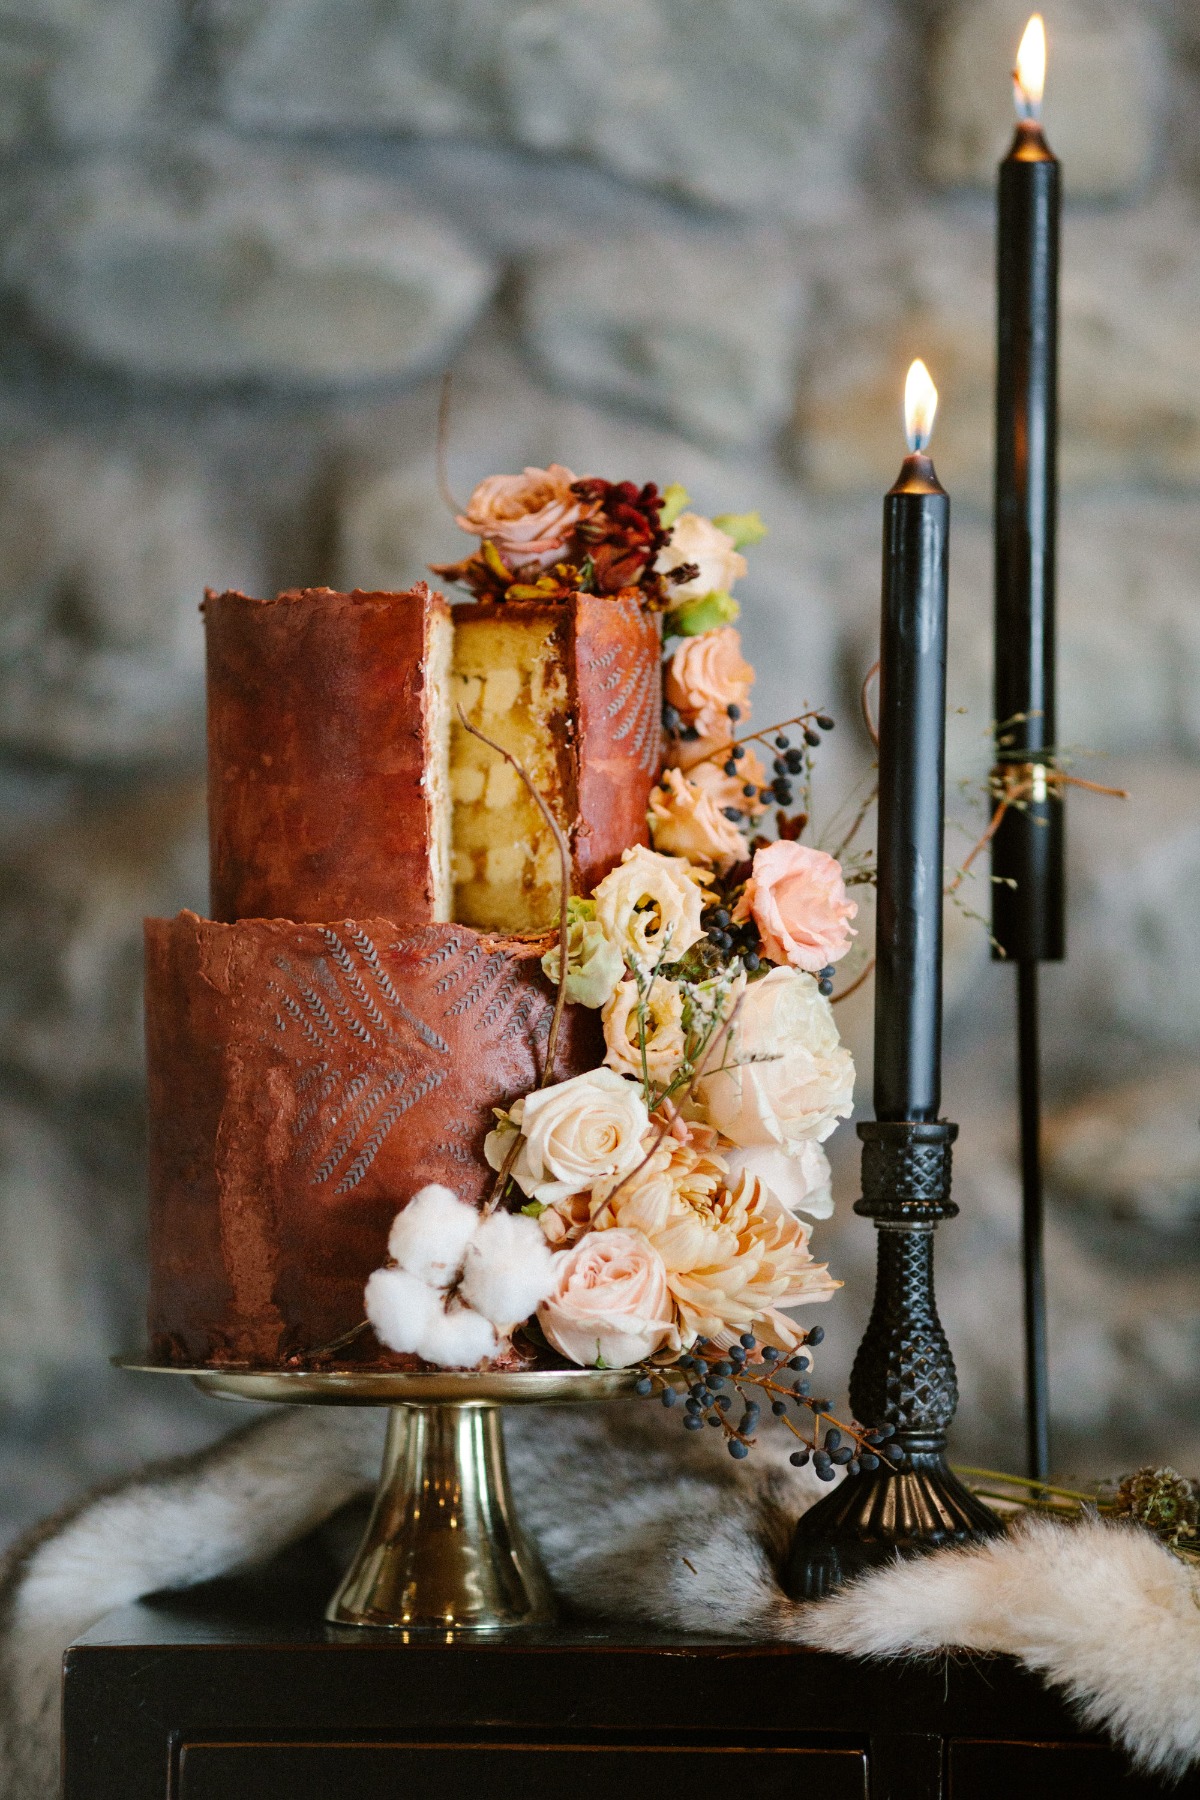 stylish and artistic wedding cake